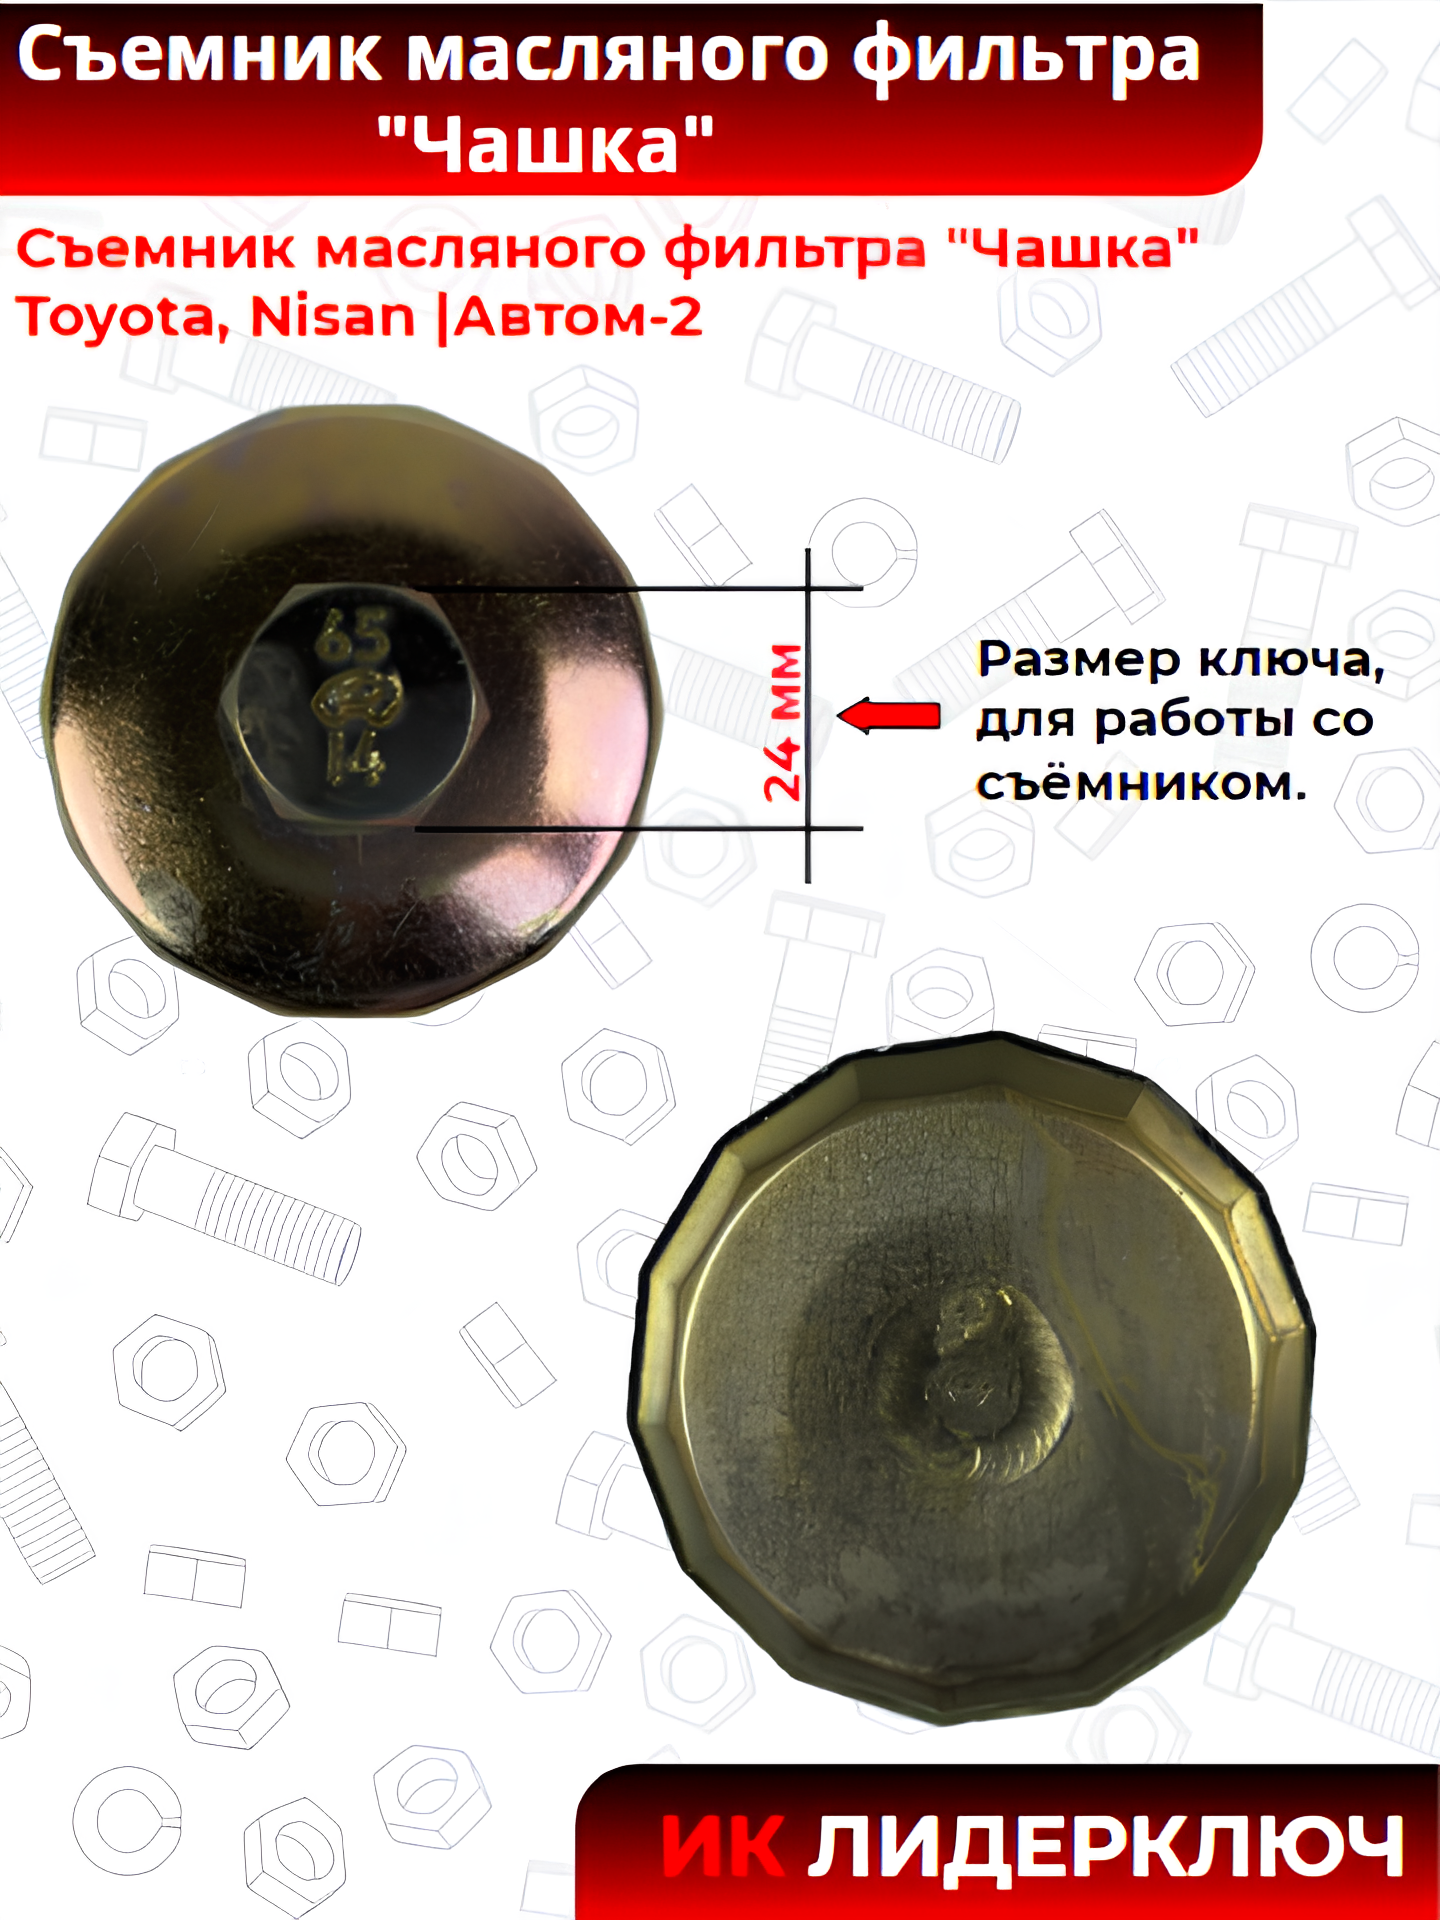 Съемник масляного фильтра "Чашка" Toyota, Nisan |Автом-2